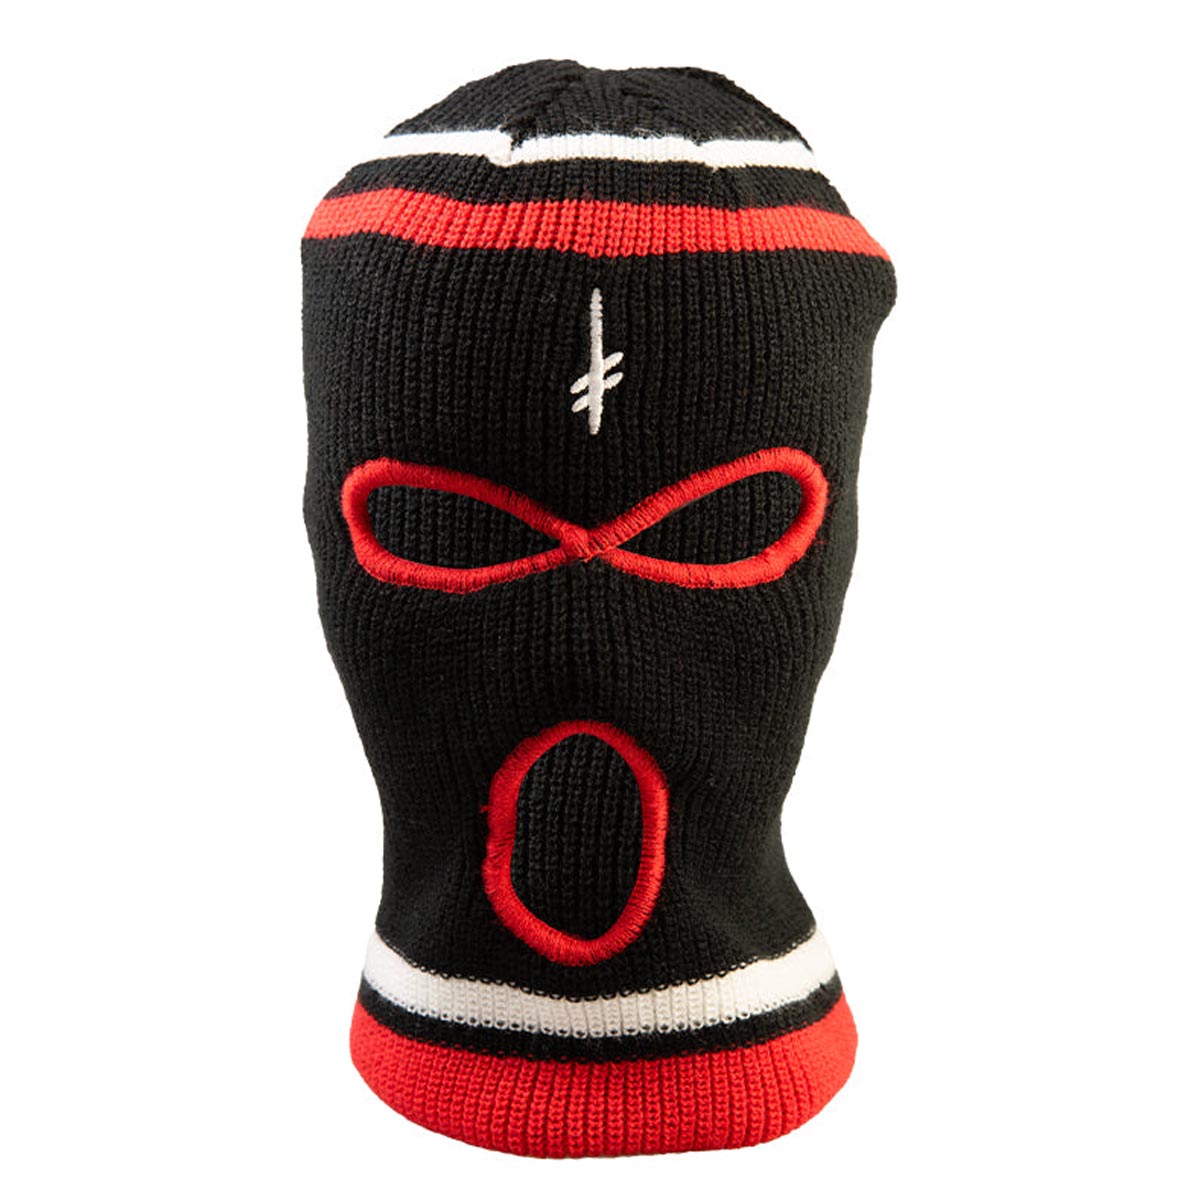 Deathwish Gang Logo Ski Mask - Black/Red image 1